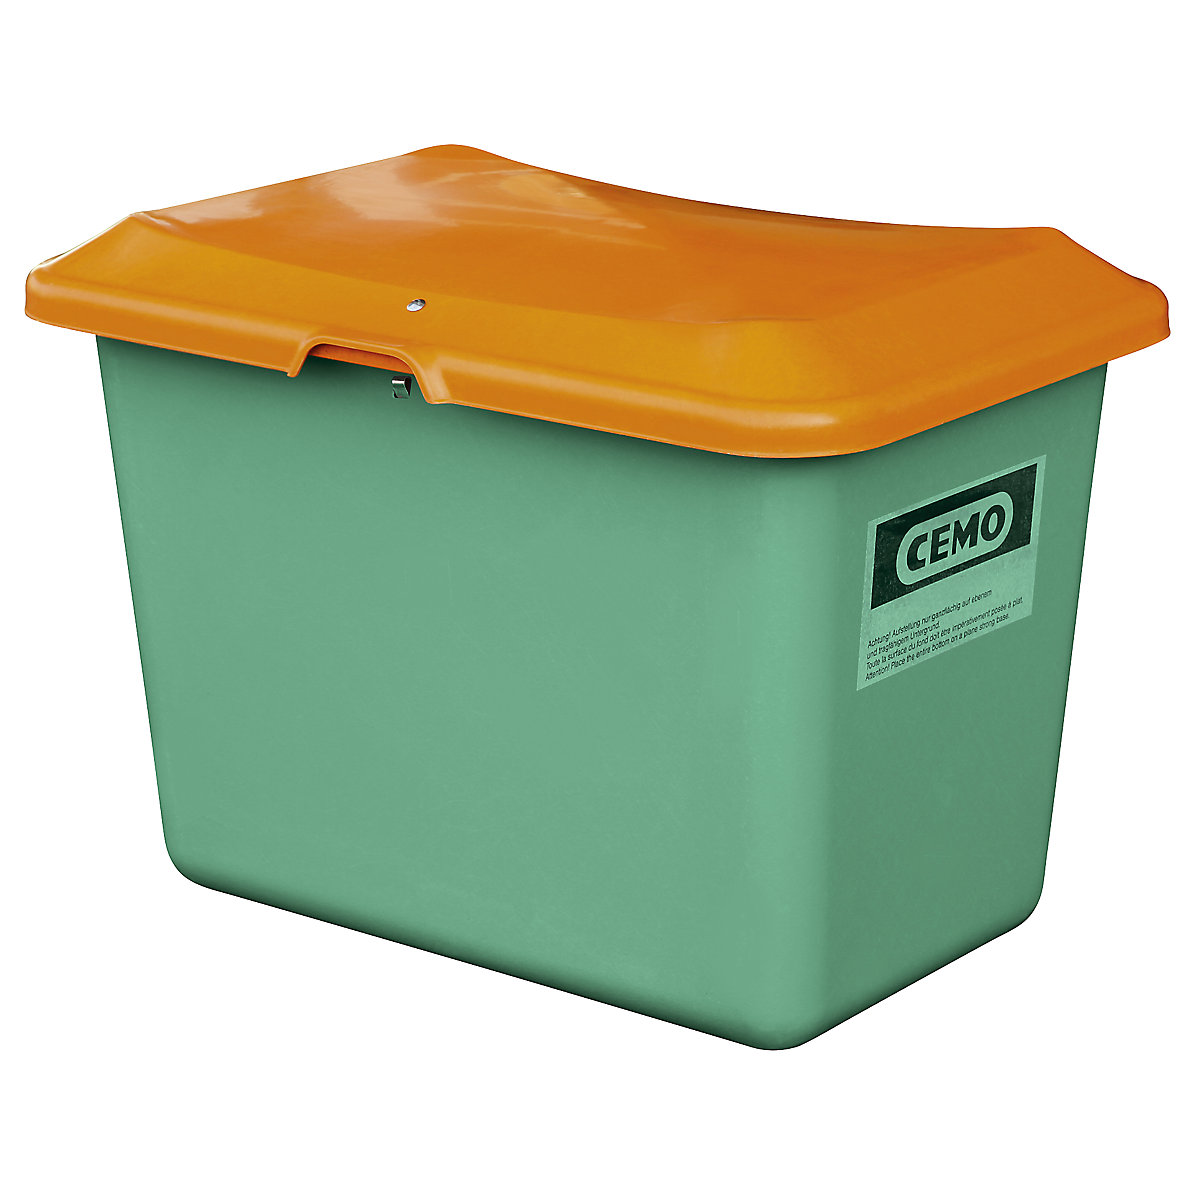 Streugutbehälter aus GfK CEMO, Volumen 100 l, ohne Entnahmeöffnung, Behälter grün